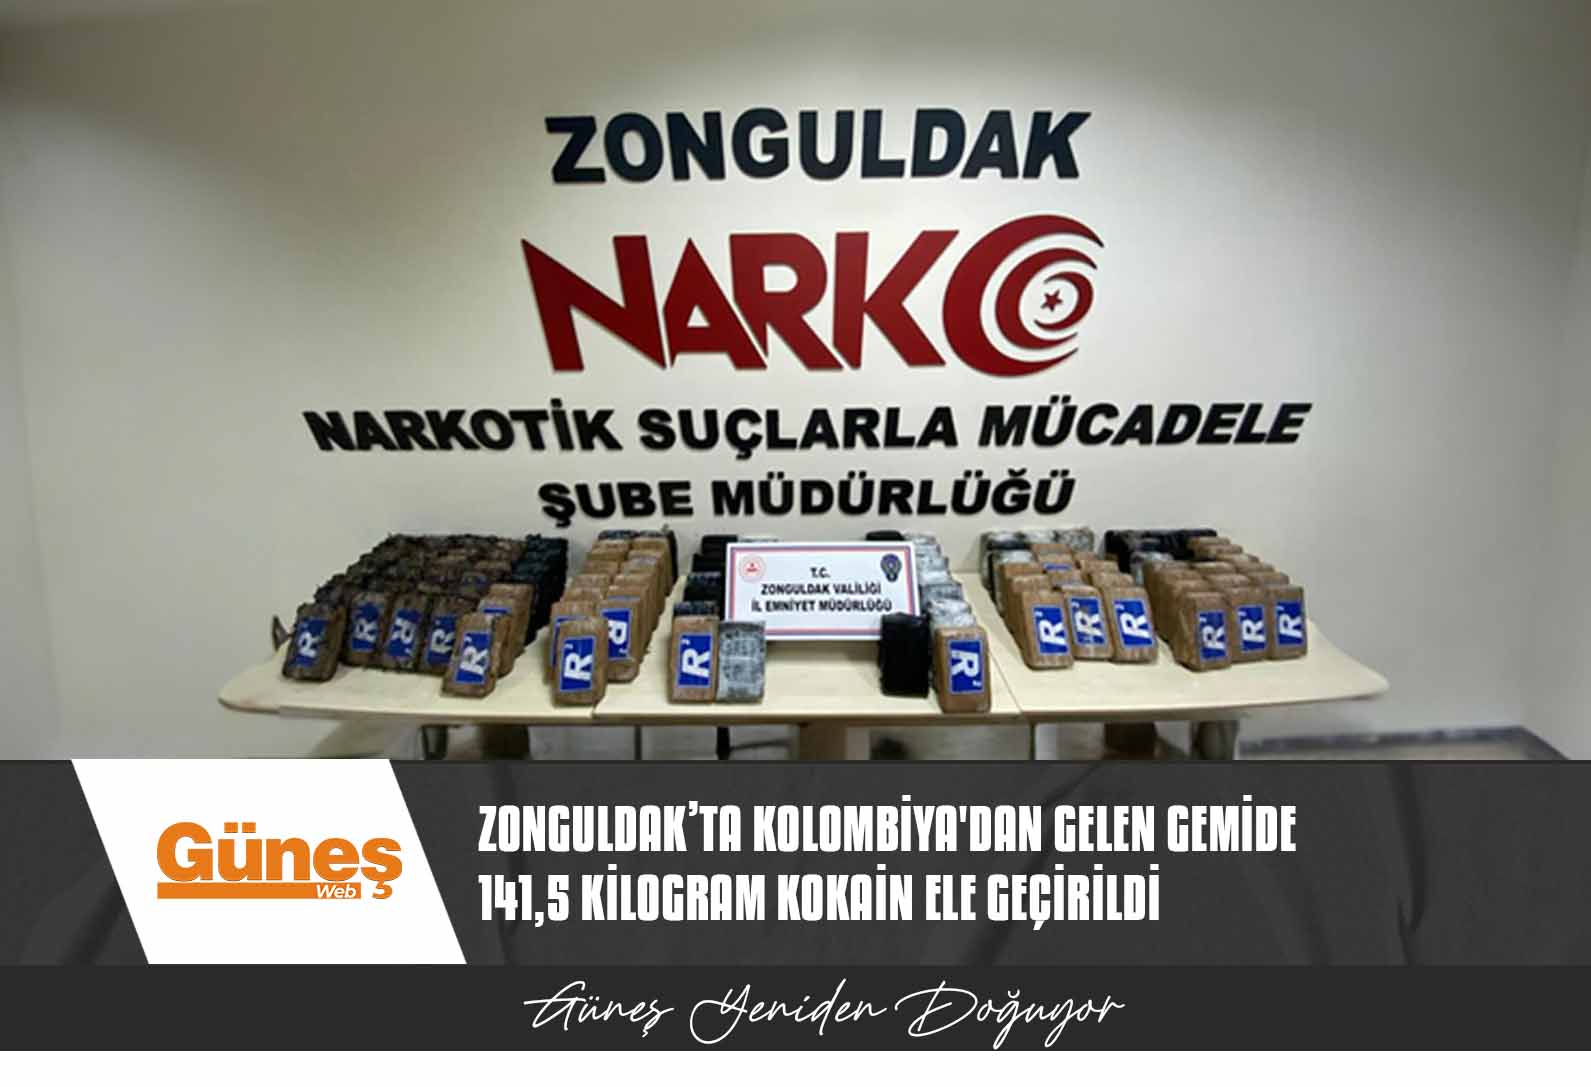 Zonguldak’ta Kolombiya’dan gelen gemide 141,5 kilogram kokain ele geçirildi, geminin 10 mürettebatı tutuklandı